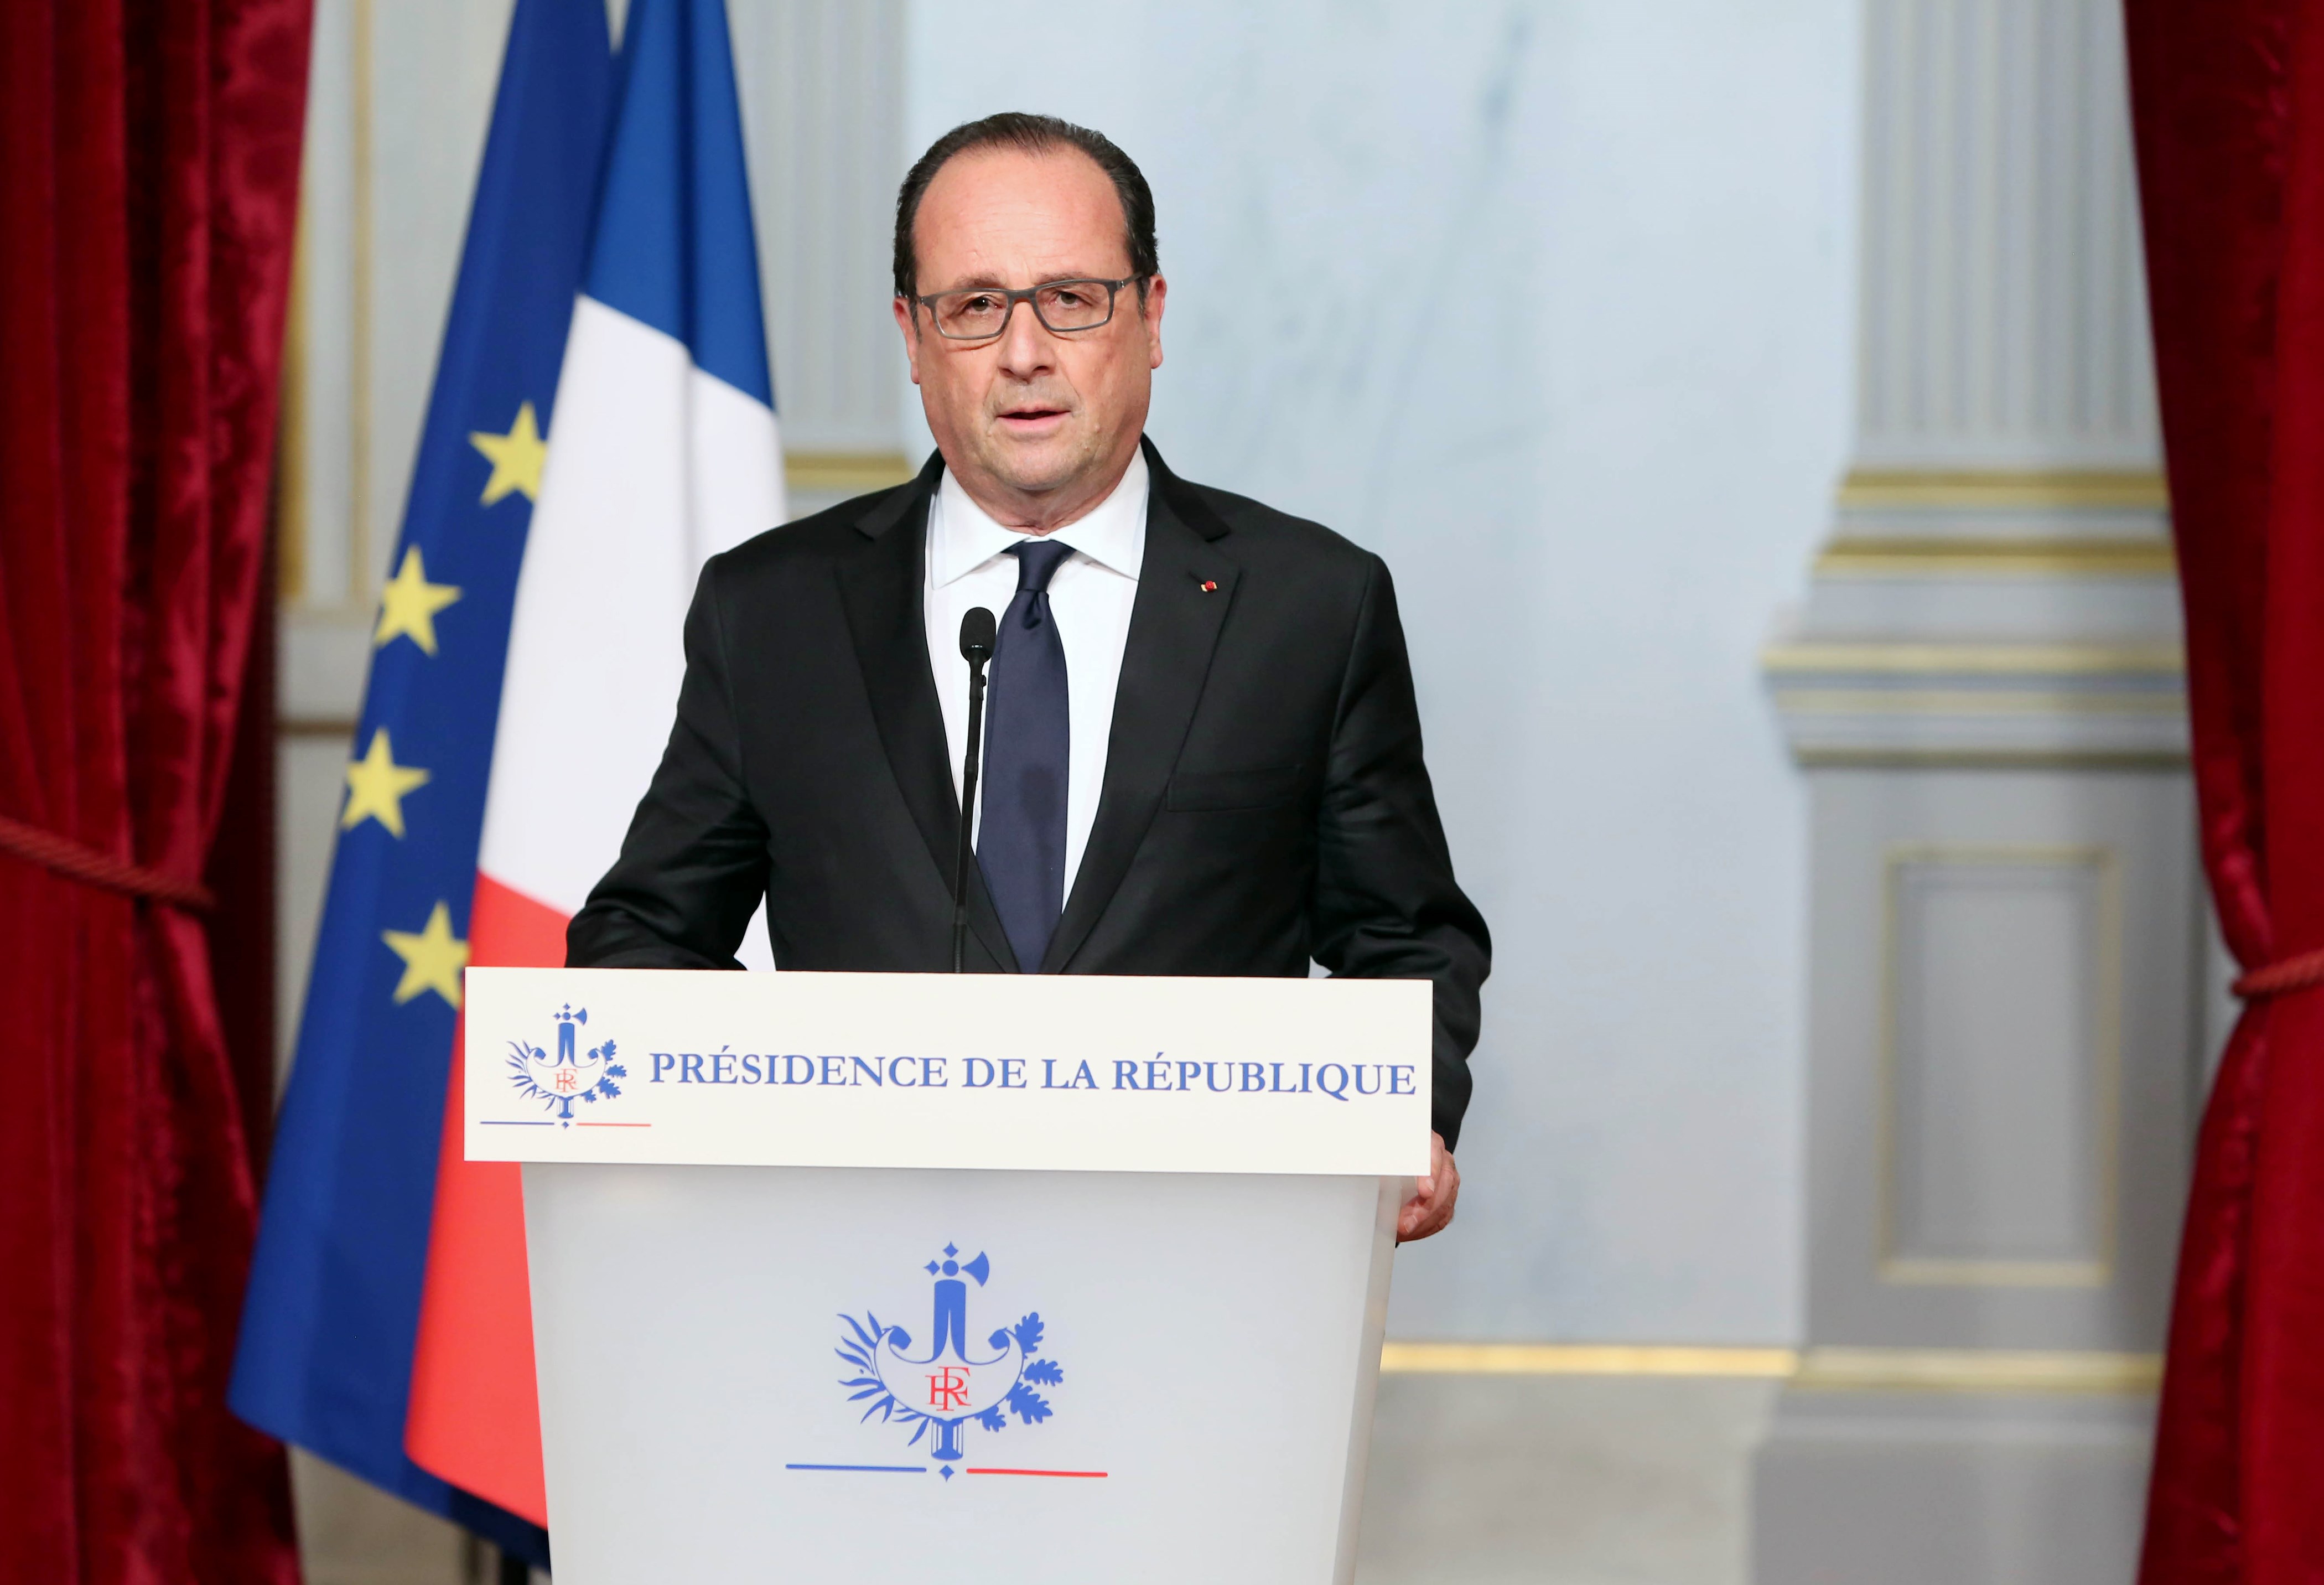 El presidente Hollande dio más detalles de los atentados